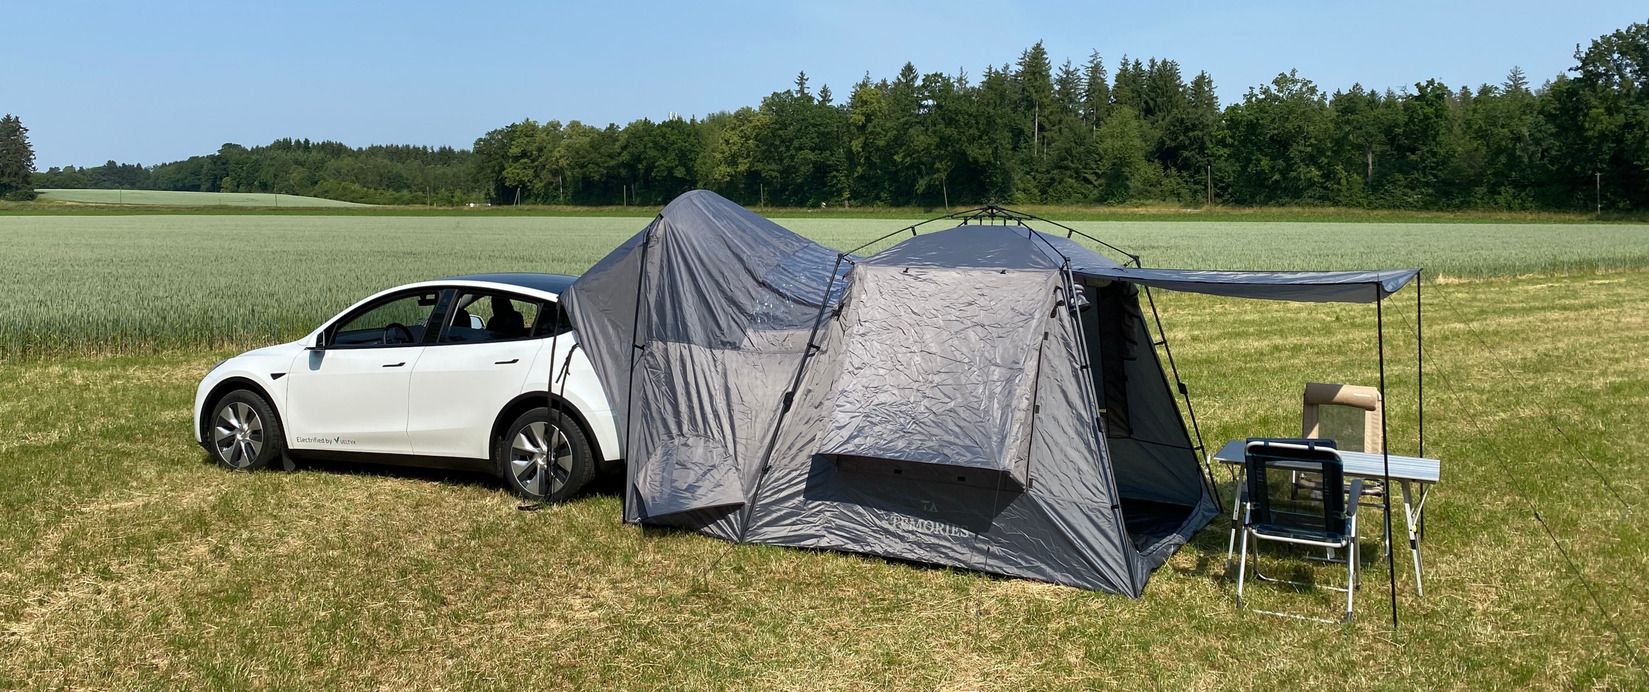 Nicht Aufblasbare Auto-suv-matratze Modell Y 3, Camping Reise